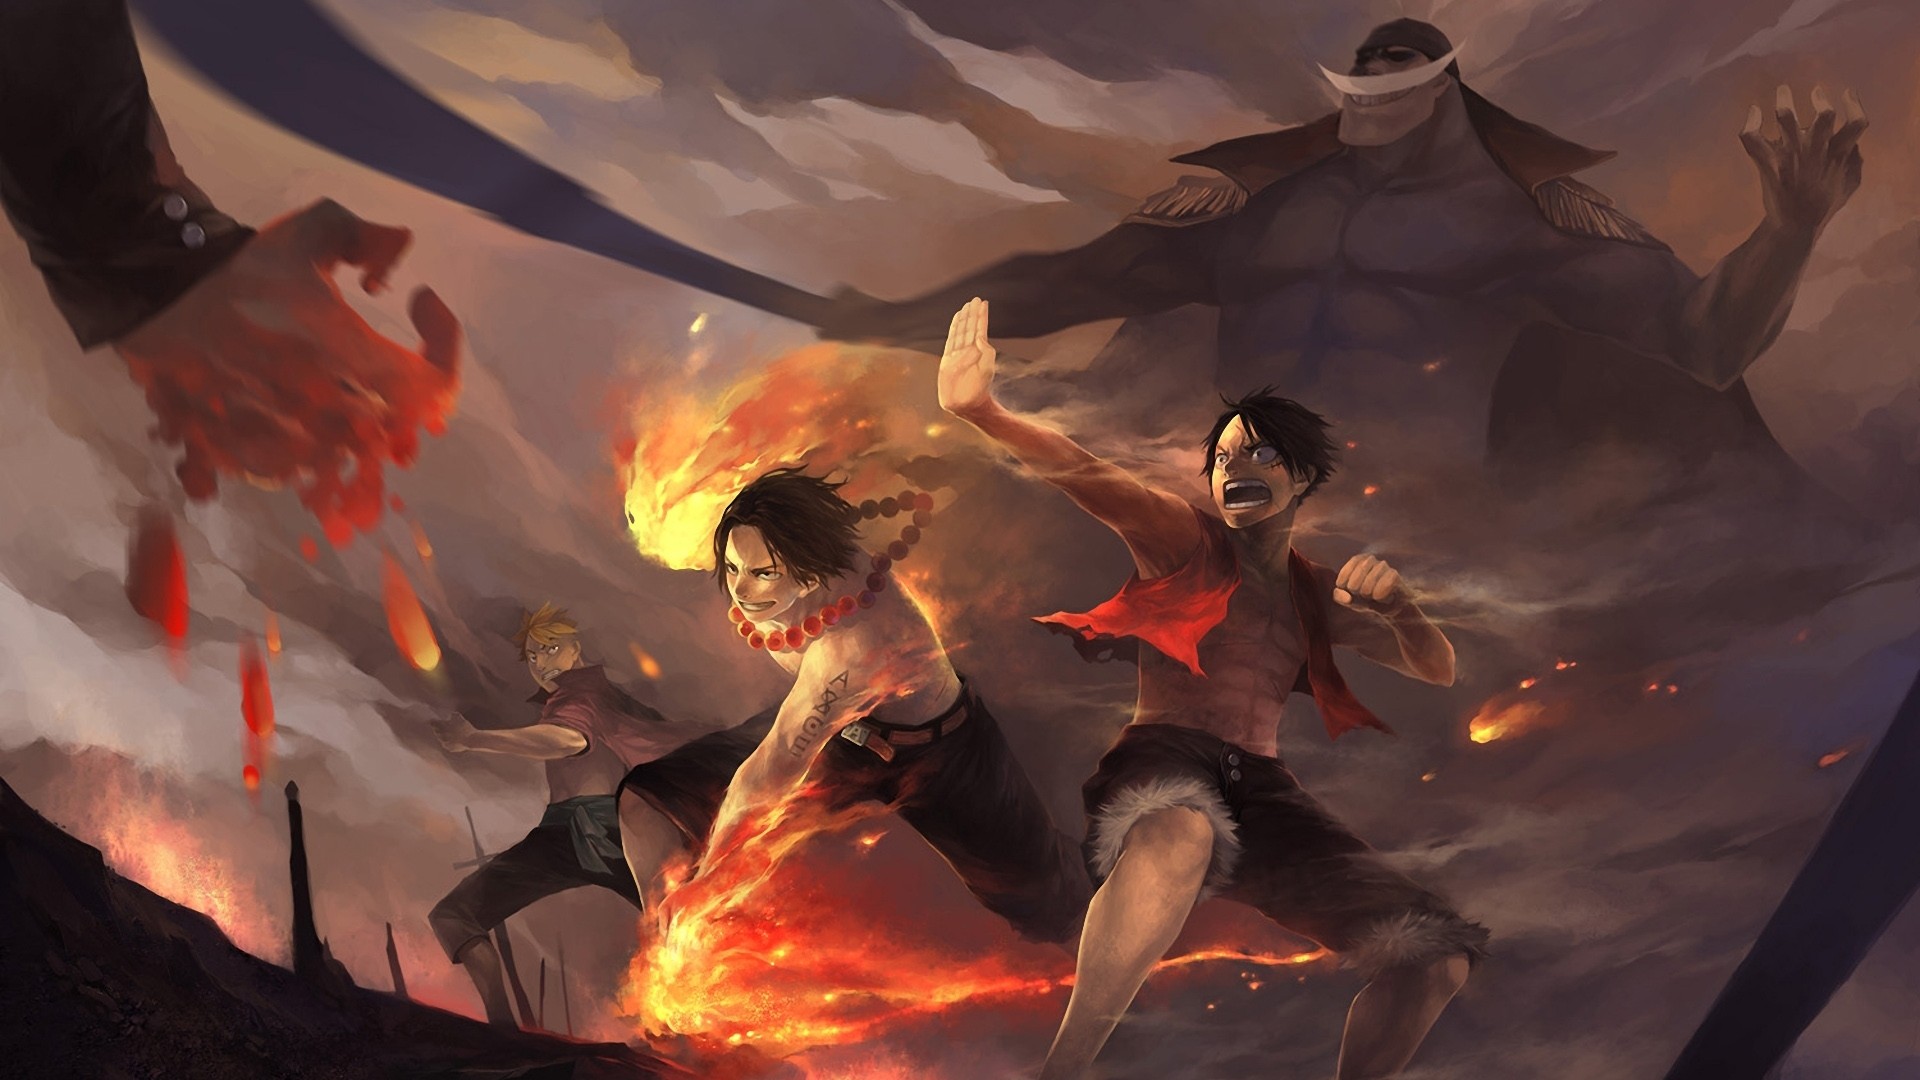 Nghệ thuật Anime One Piece Art mang đến cho bạn những cảm xúc đậm chất hành động, tràn đầy sức mạnh và sự đam mê với những nhân vật dũng cảm và tuyệt vời.